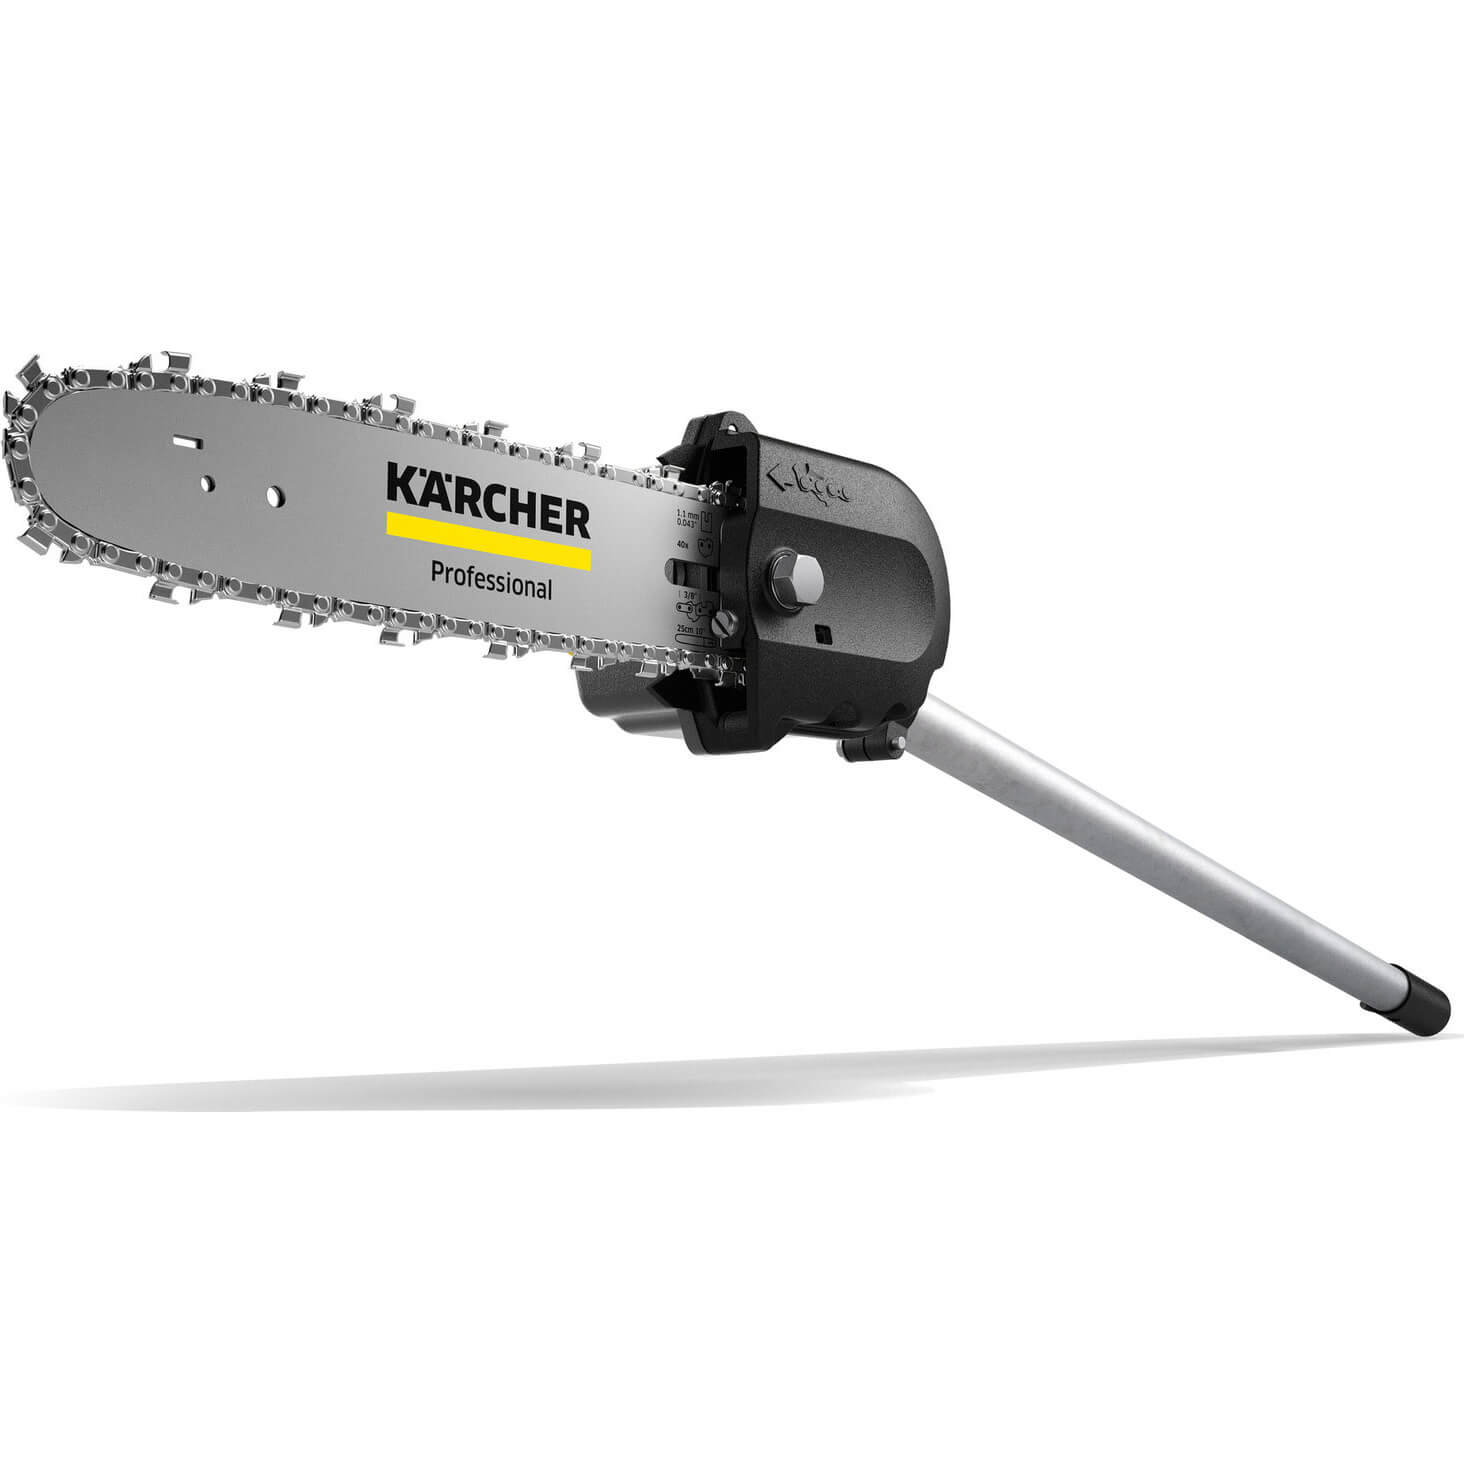 Karcher MT CS 250/36 Professional Pole Tree Pruner Head 250mm